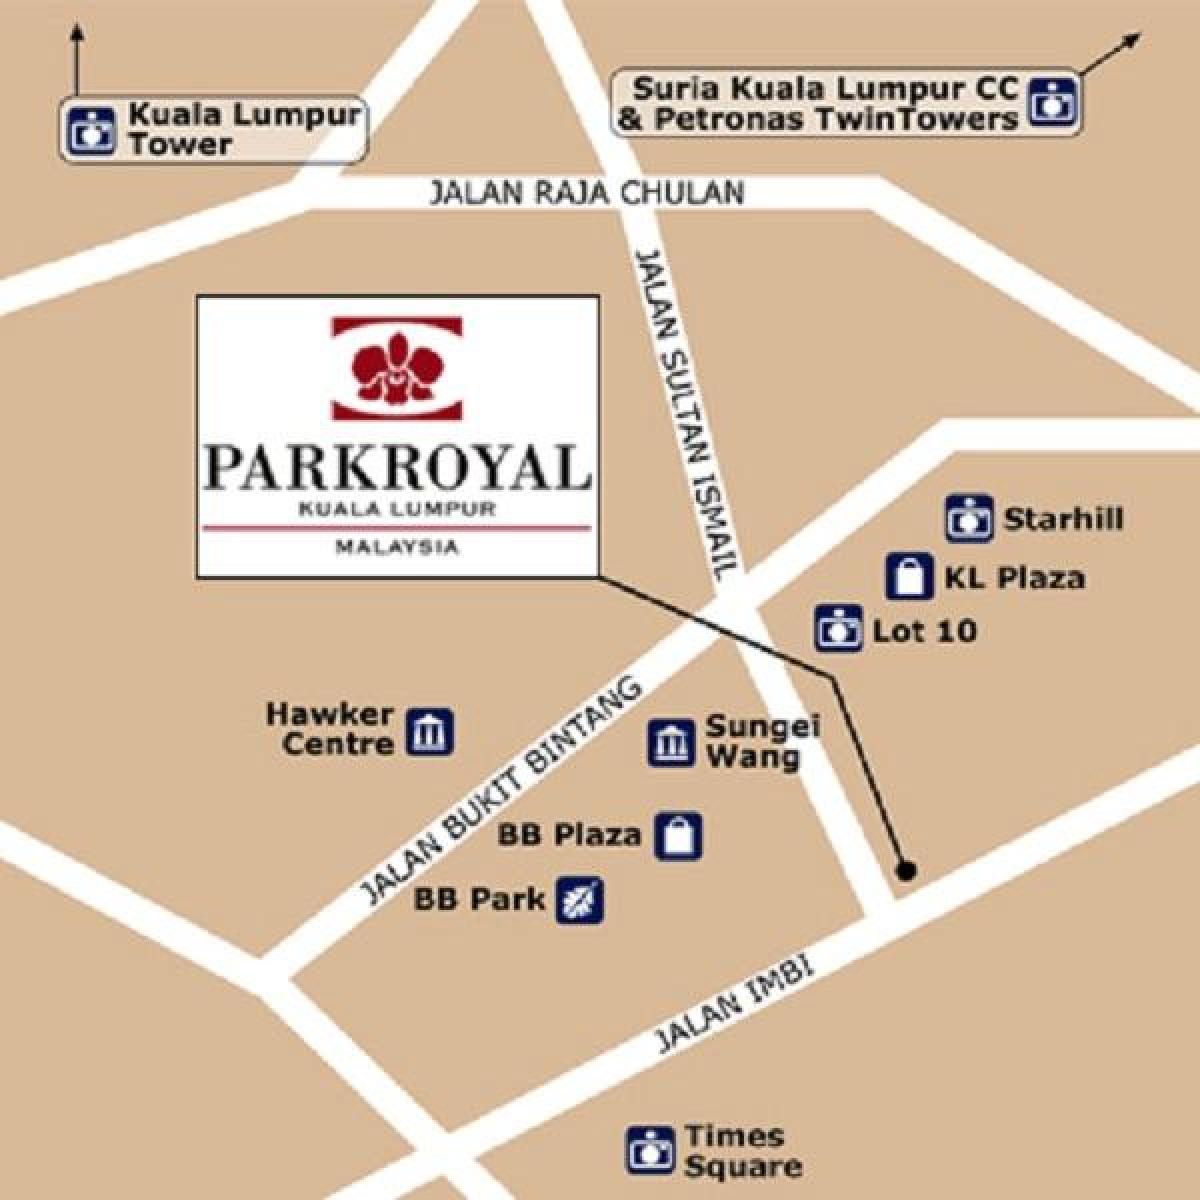 نقشہ کے parkroyal کوالالمپور